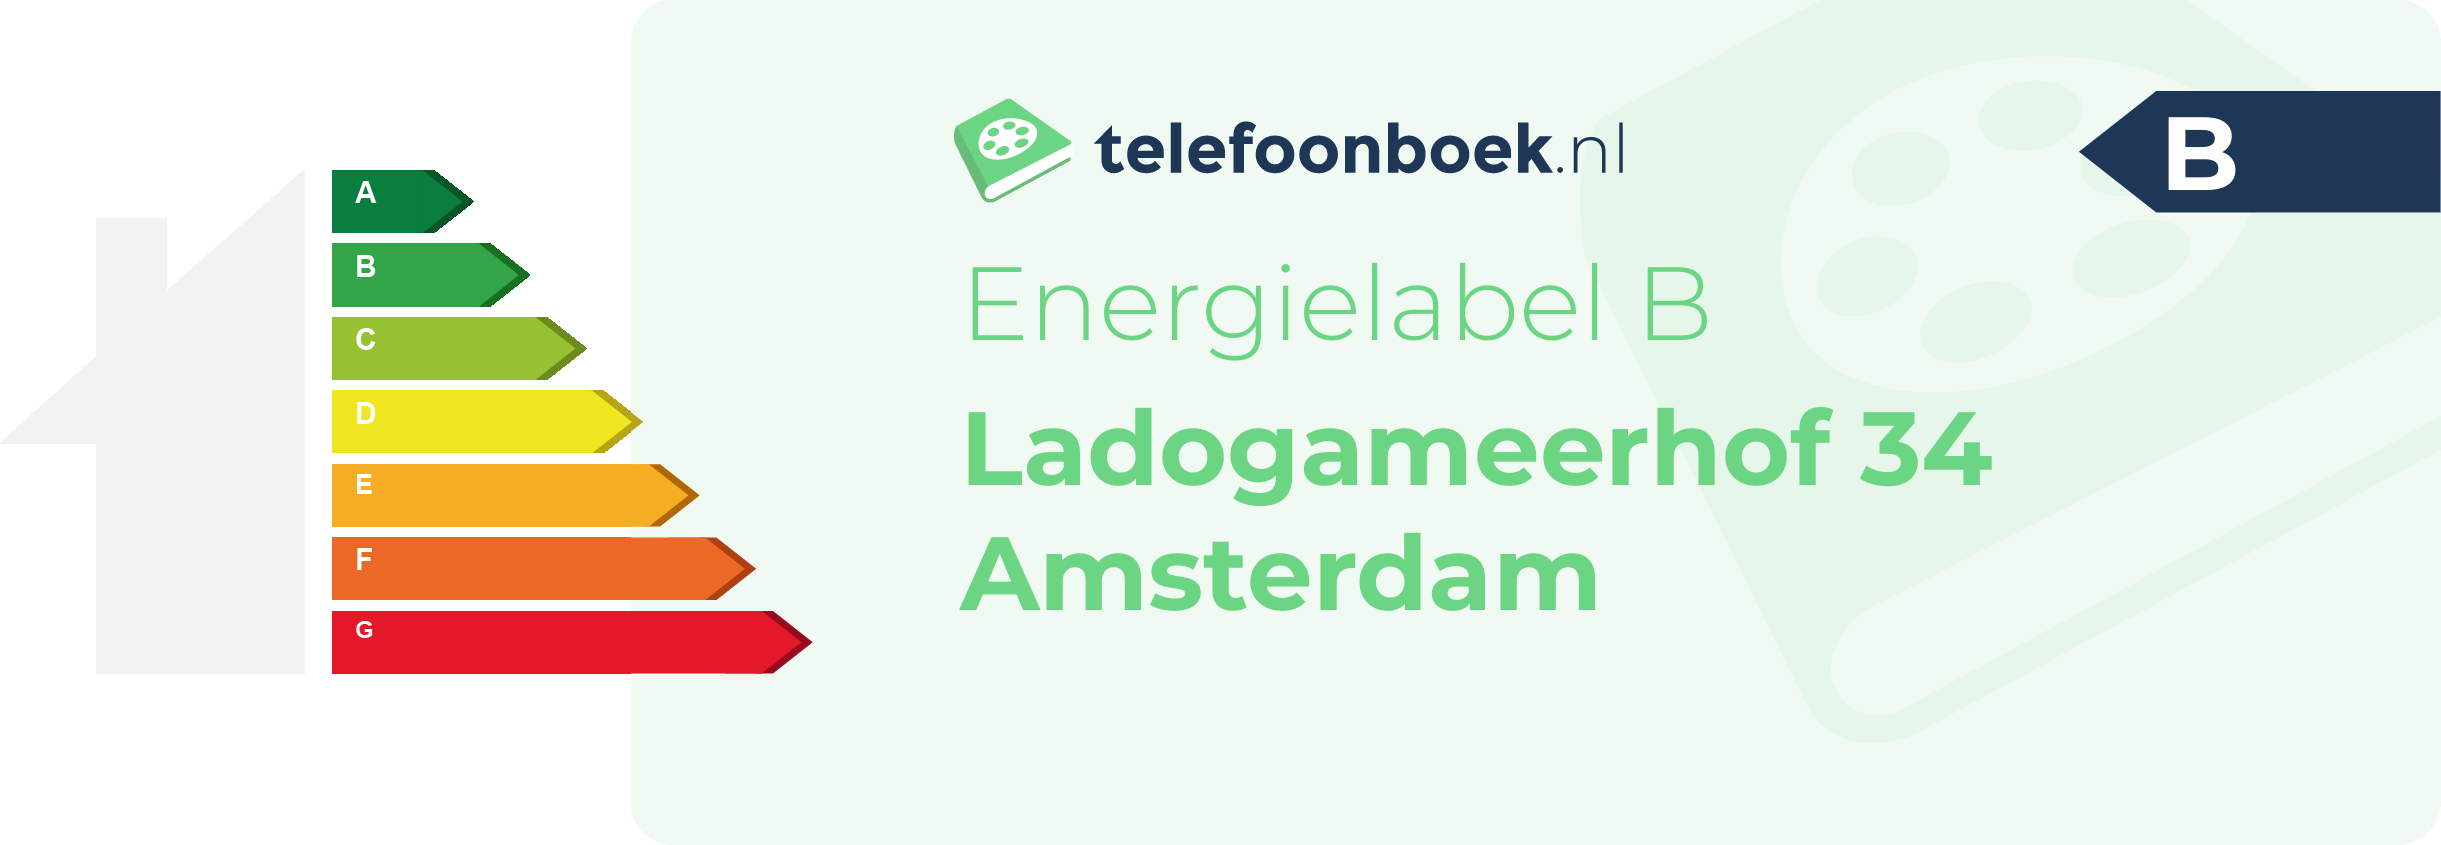 Energielabel Ladogameerhof 34 Amsterdam